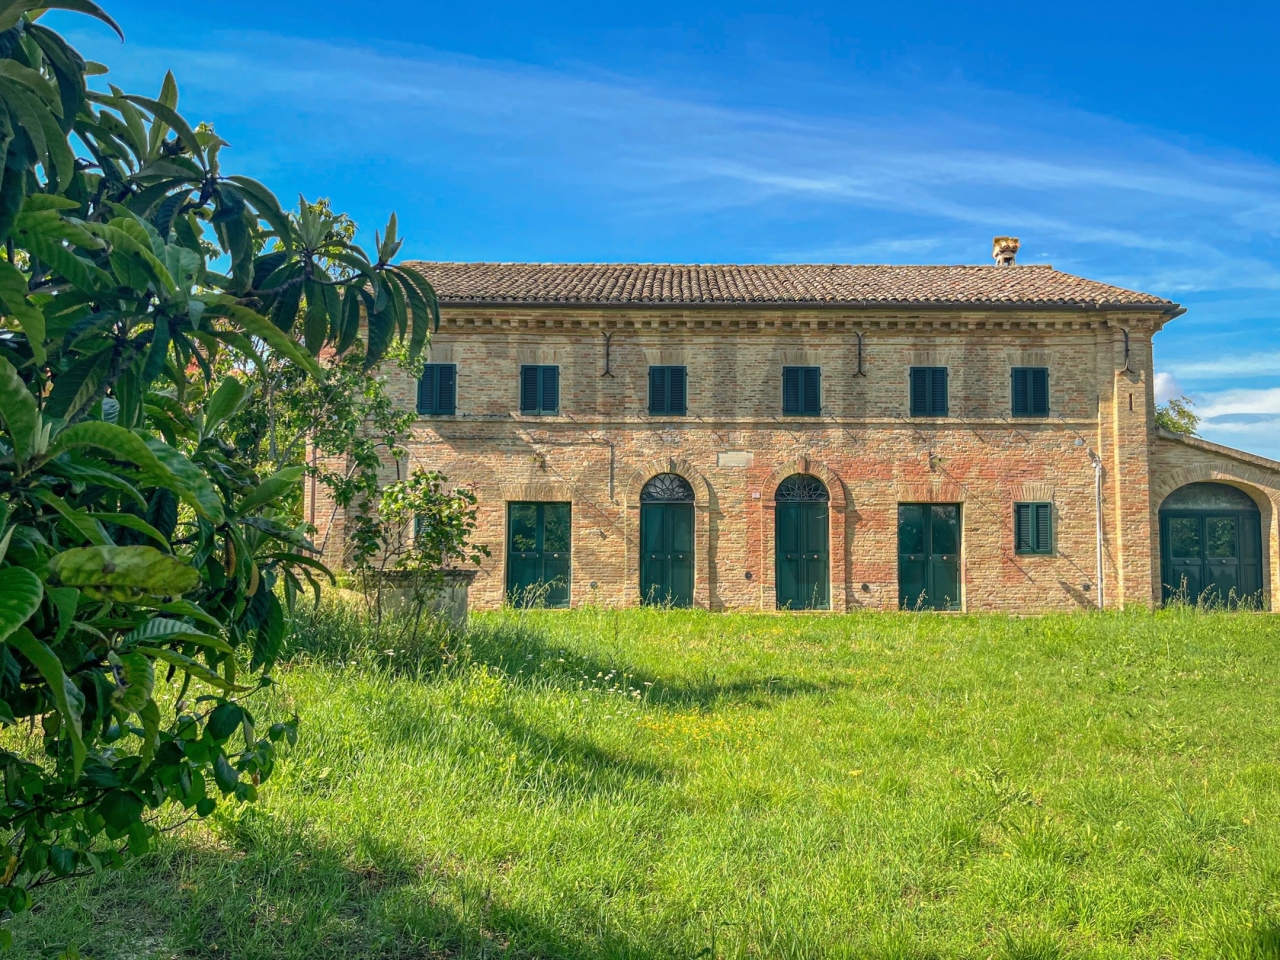 Villa in vendita a Monte San Vito, 9999 locali, prezzo € 295.000 | PortaleAgenzieImmobiliari.it